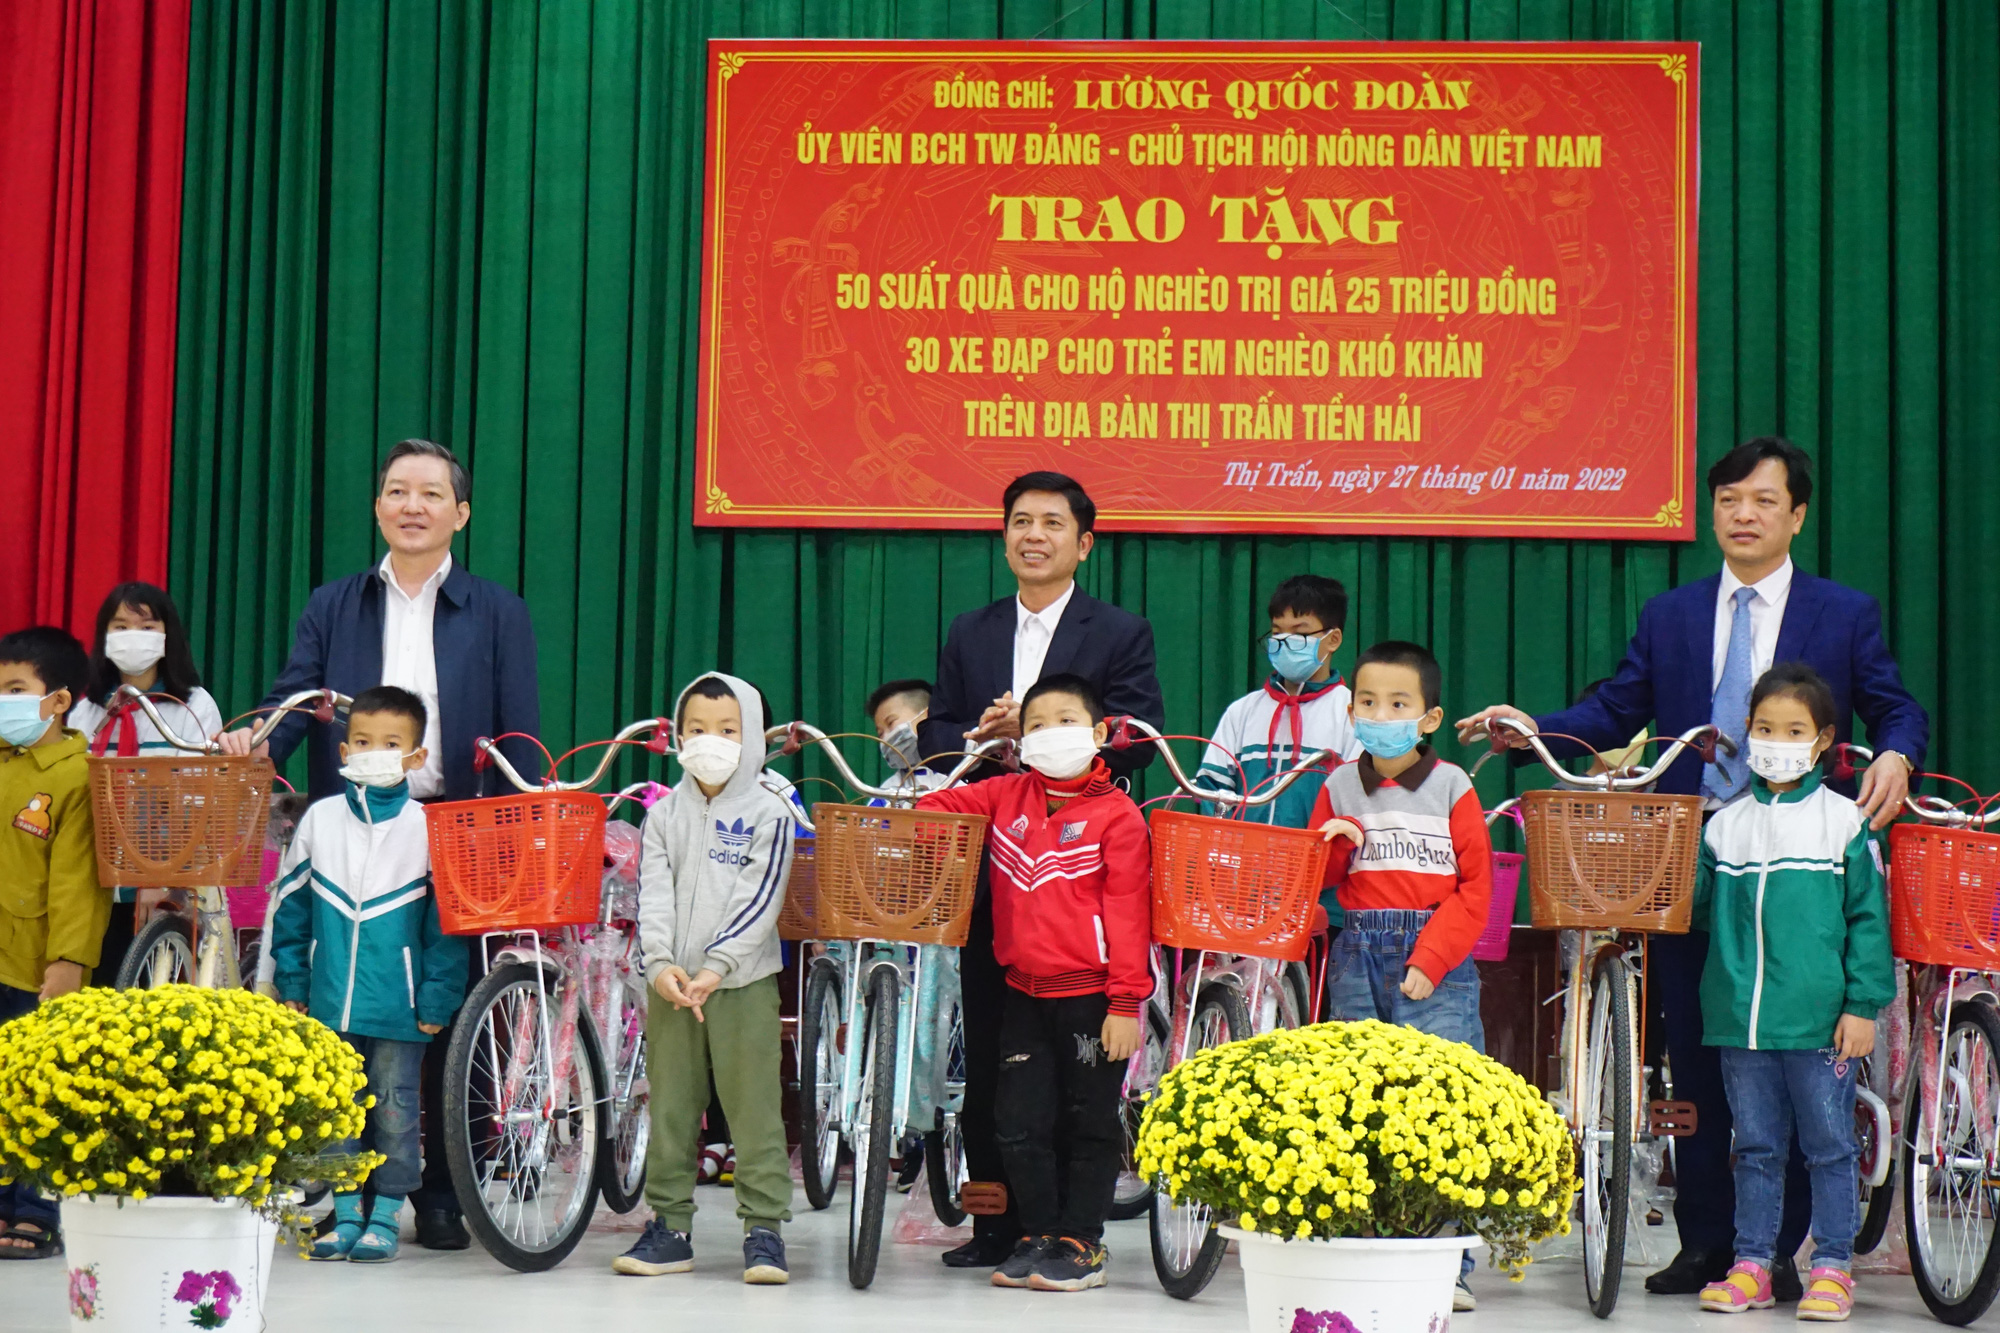 Chủ tịch Trung ương Hội NDVN Lương Quốc Đoàn tặng quà Tết người nghèo tại Tiền Hải, Thái Bình - Ảnh 1.